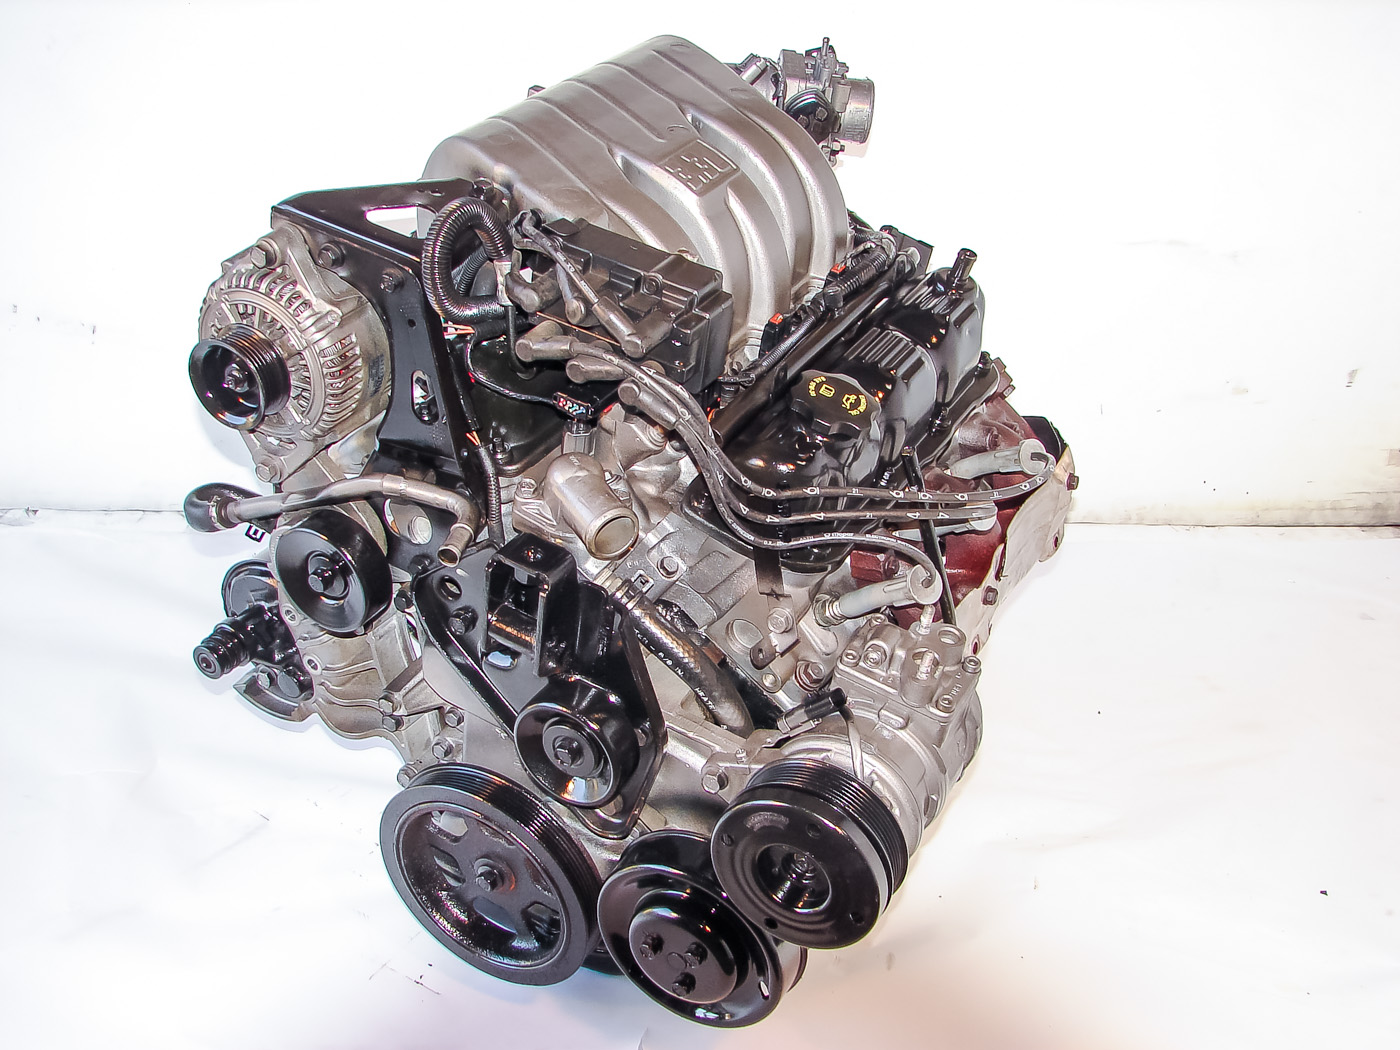 1996-2000 Chrysler Town and Country 3.3L V6 Used Engine | Engine World 2000 Dodge Caravan Engine 3.3 L V6